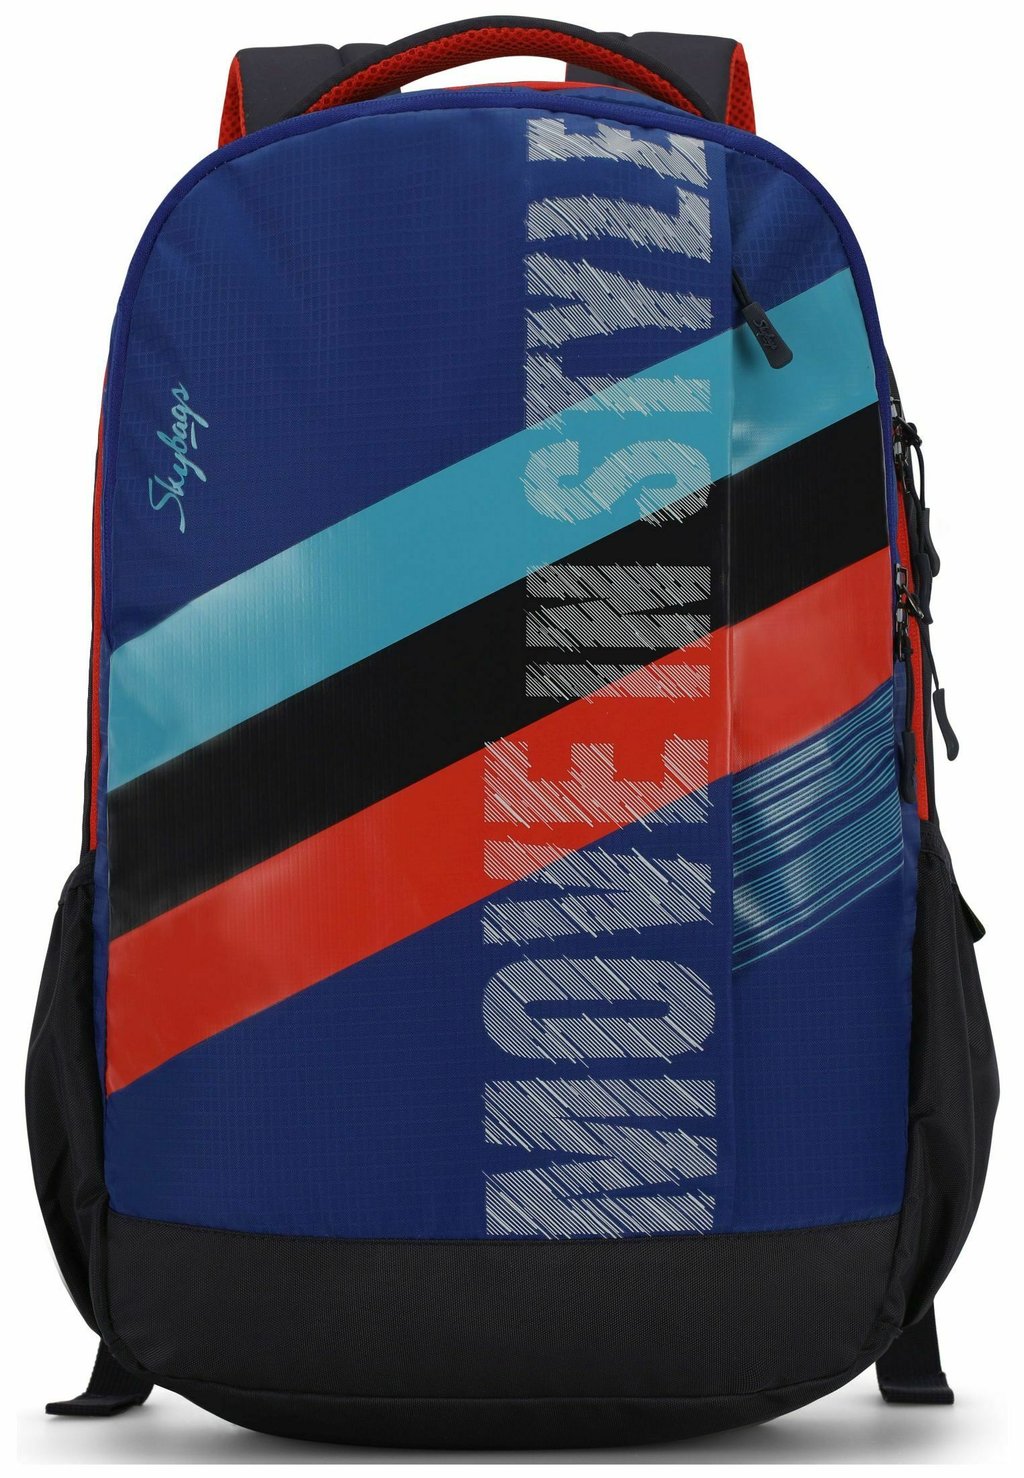 Рюкзак Skybags, цвет blue